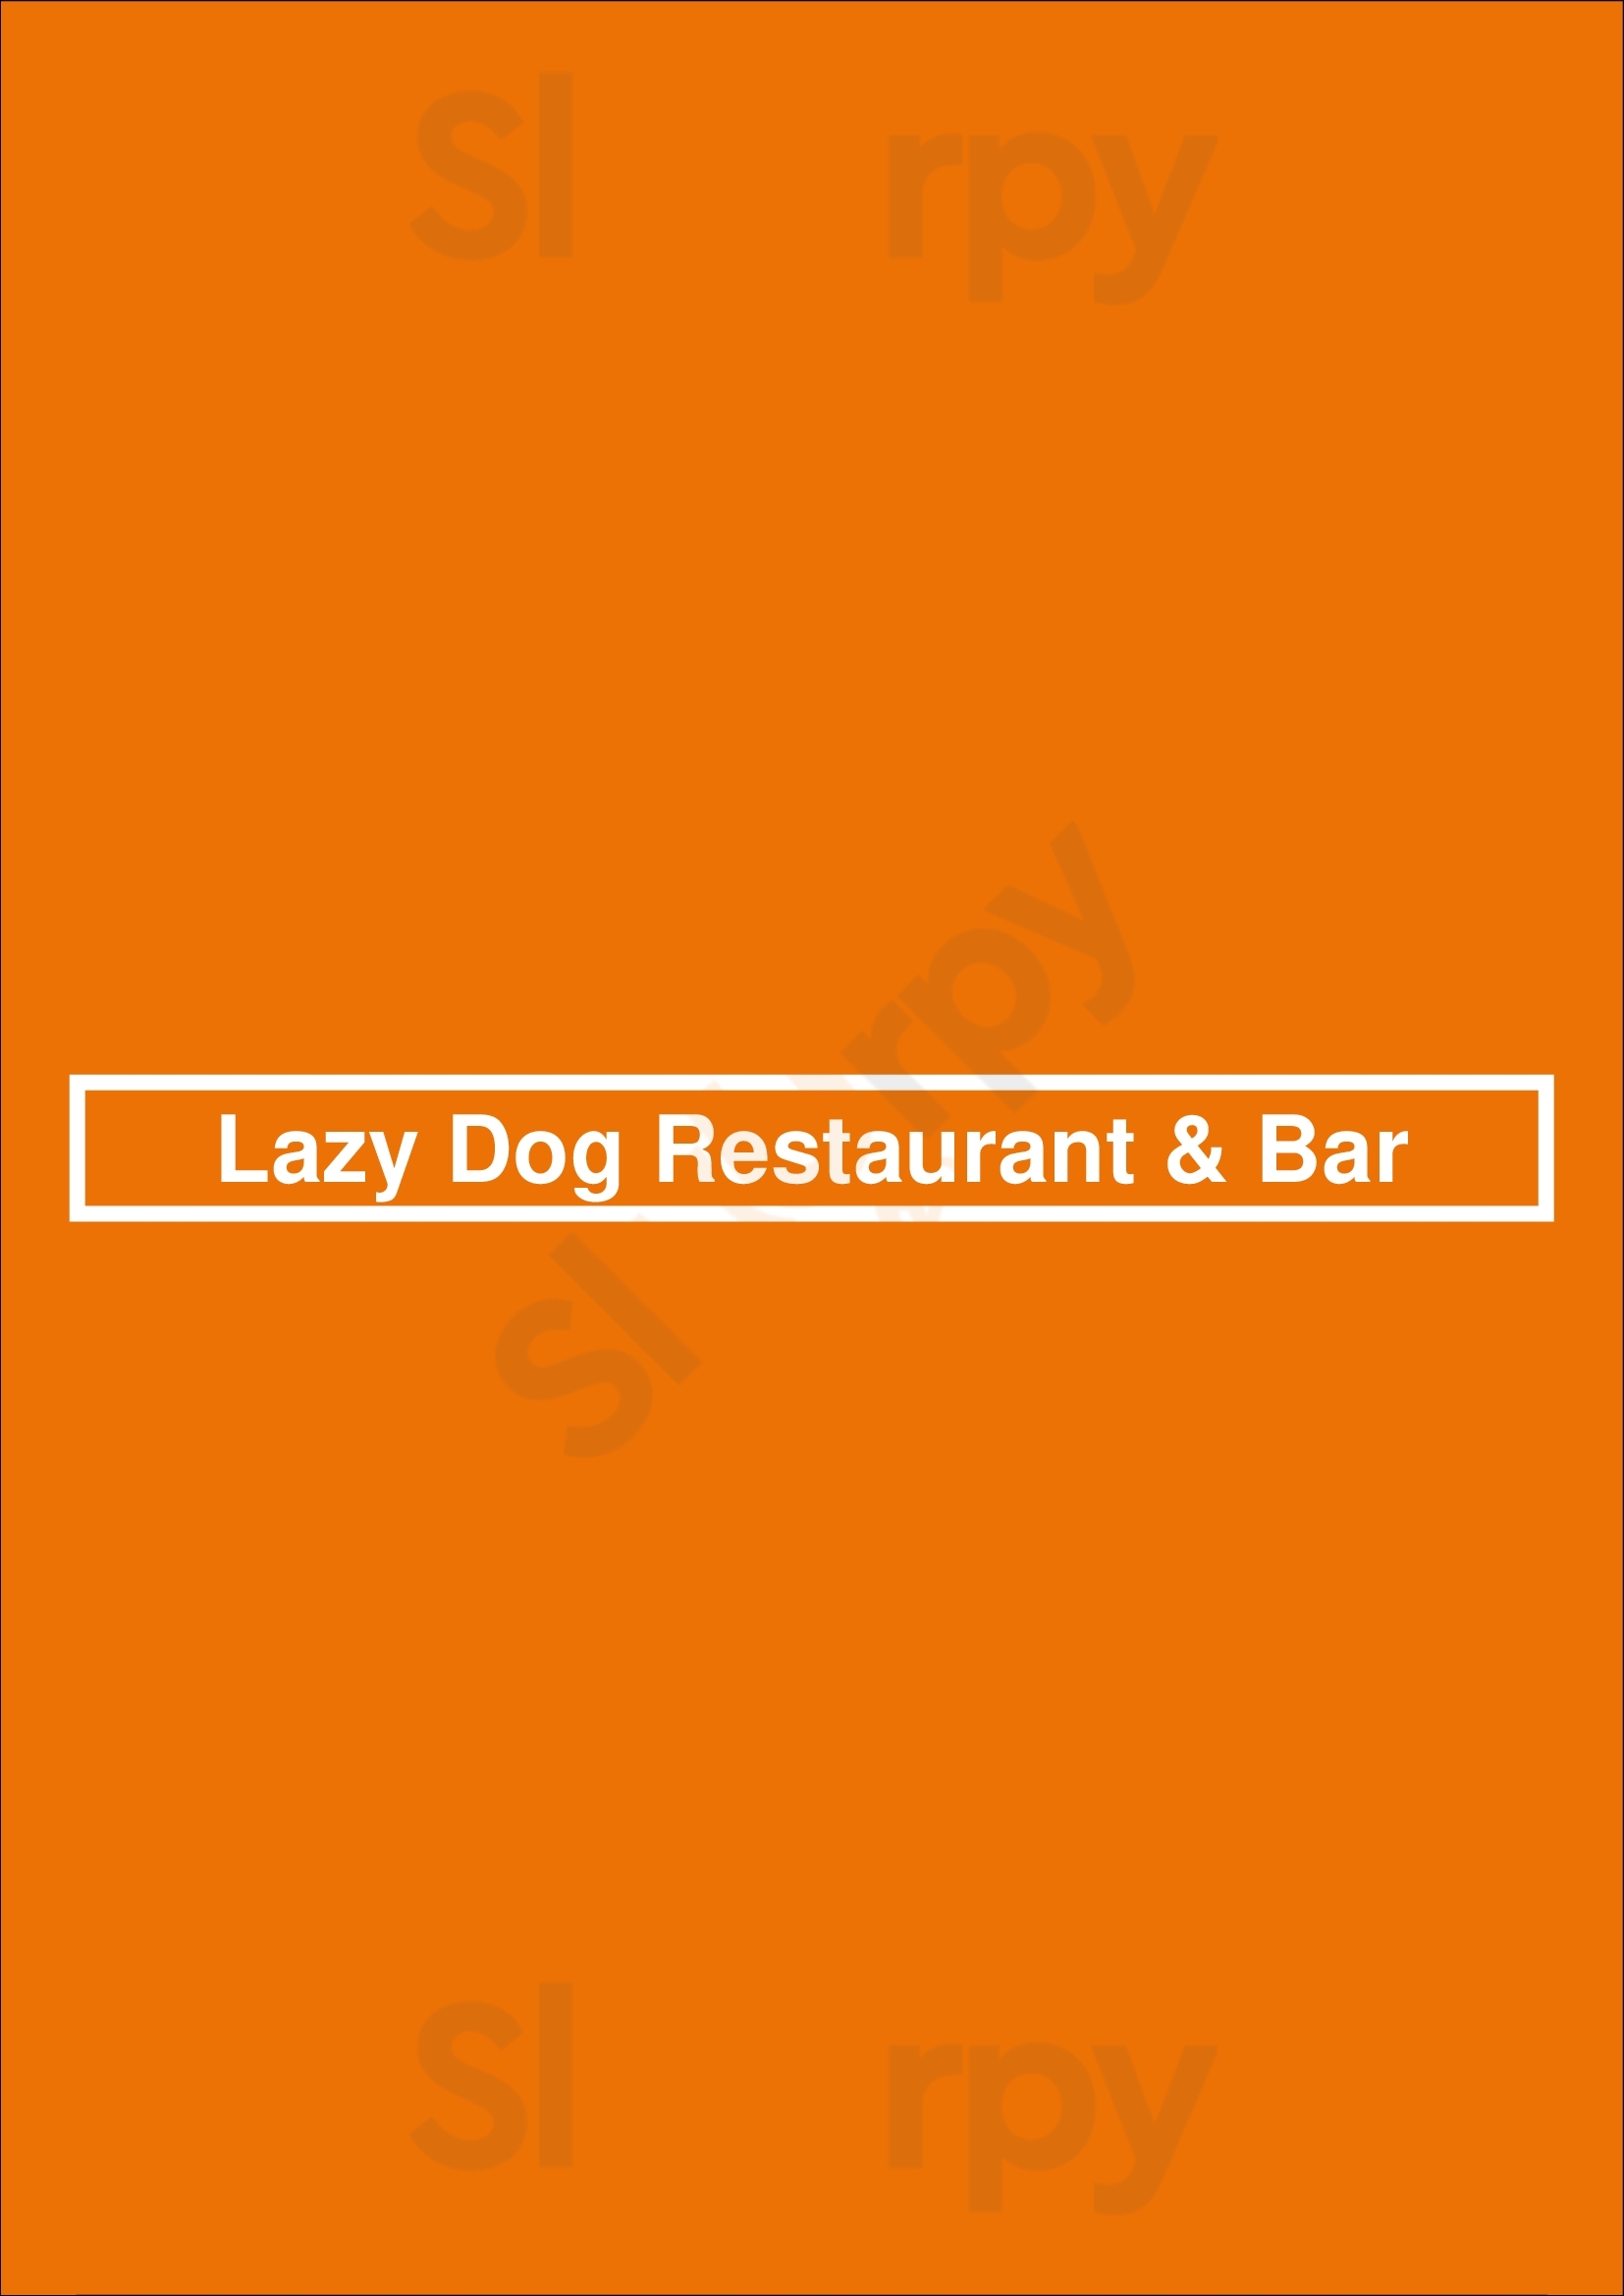 Lazy Dog Restaurant & Bar Las Vegas Menu - 1